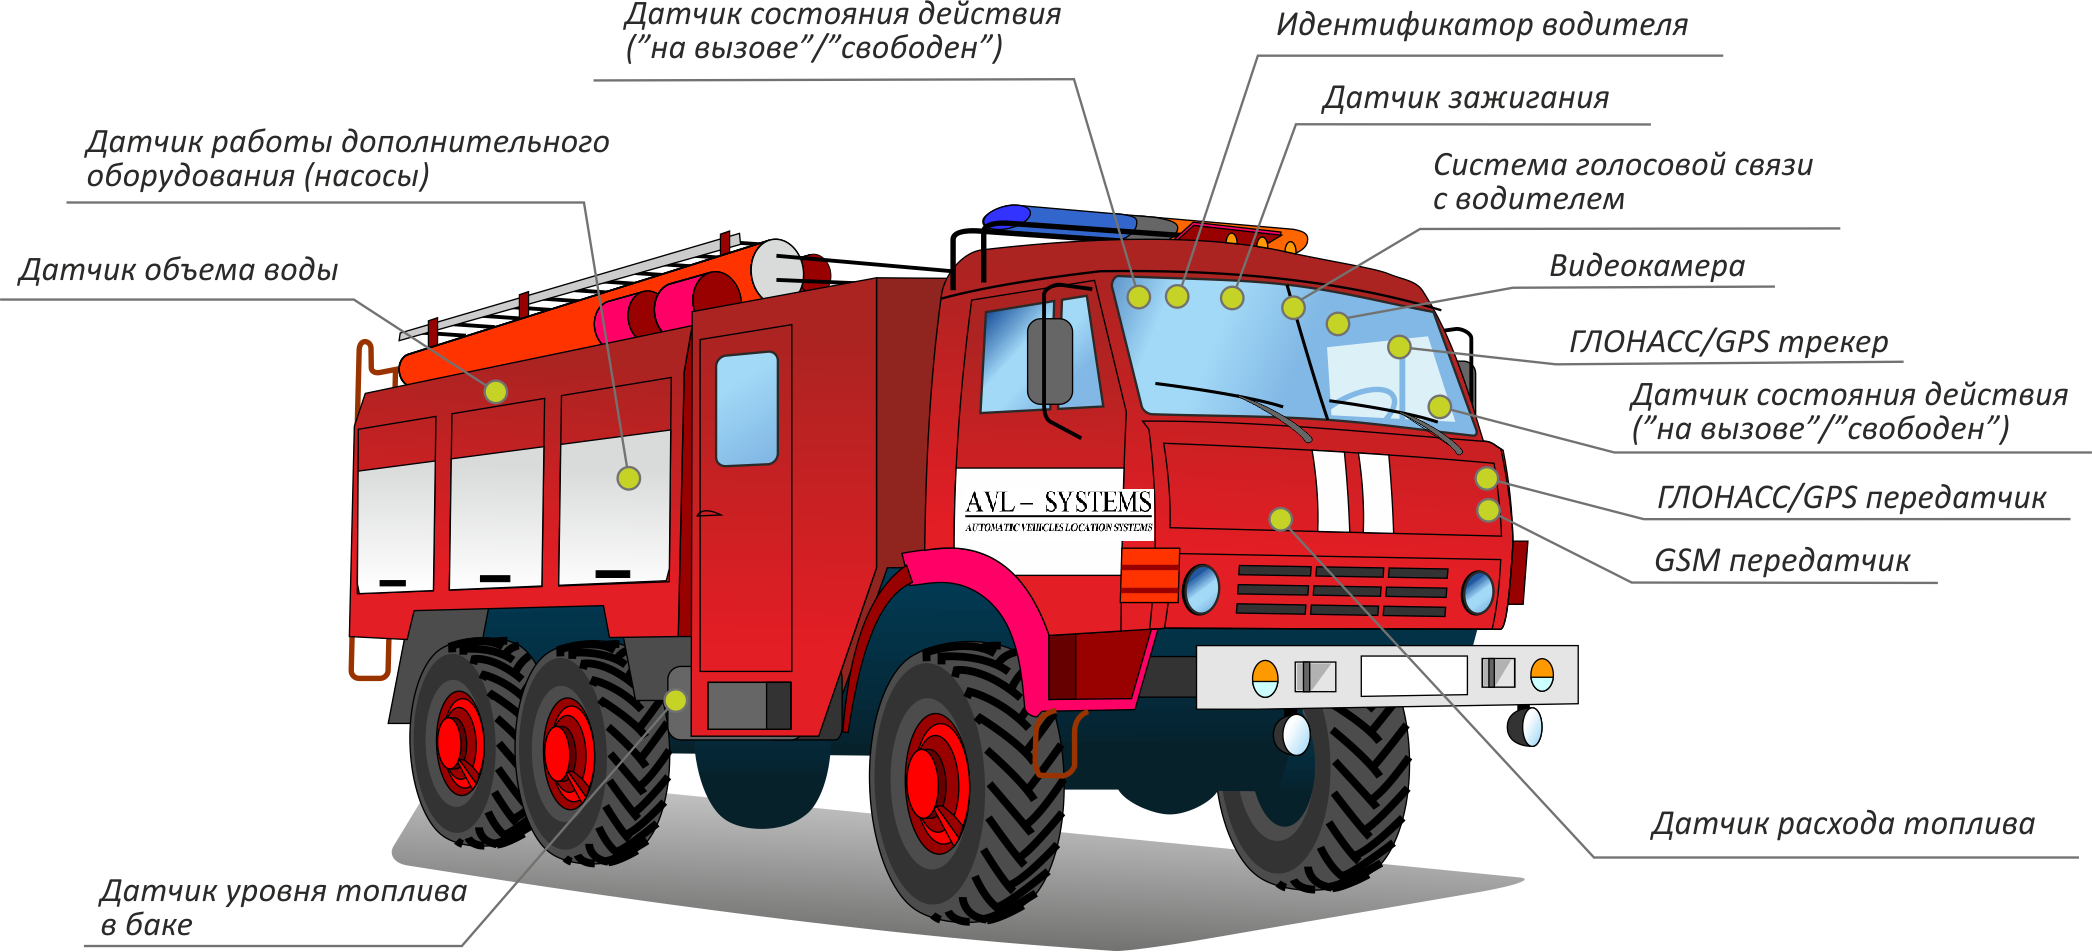 Средний ремонт пожарного автомобиля. Автомобиль рукавный 43502. Пожарная техника АЦ. Части пожарной машины. Пожарный автомобиль.